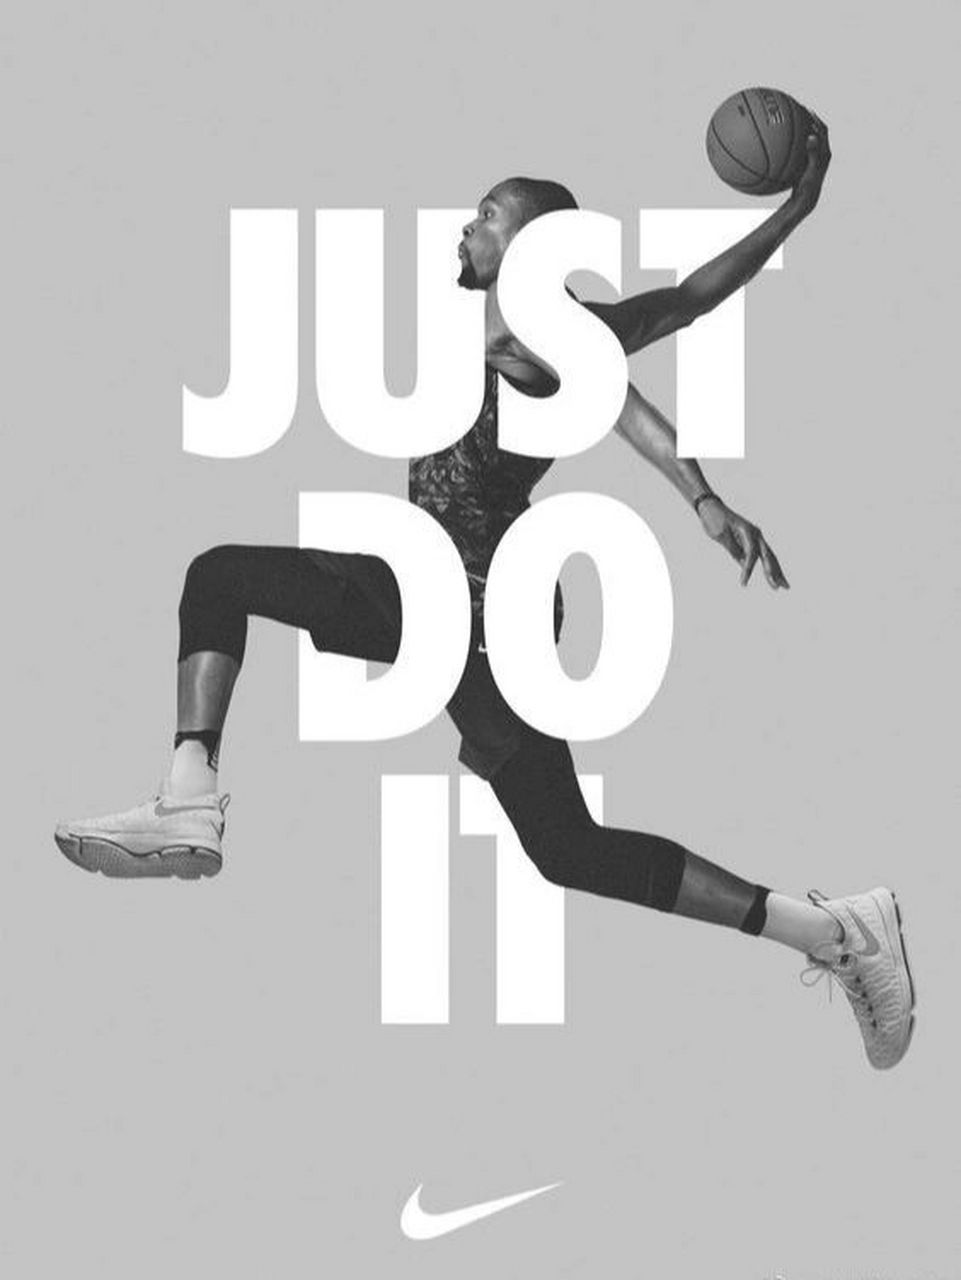 Nike广告语图片